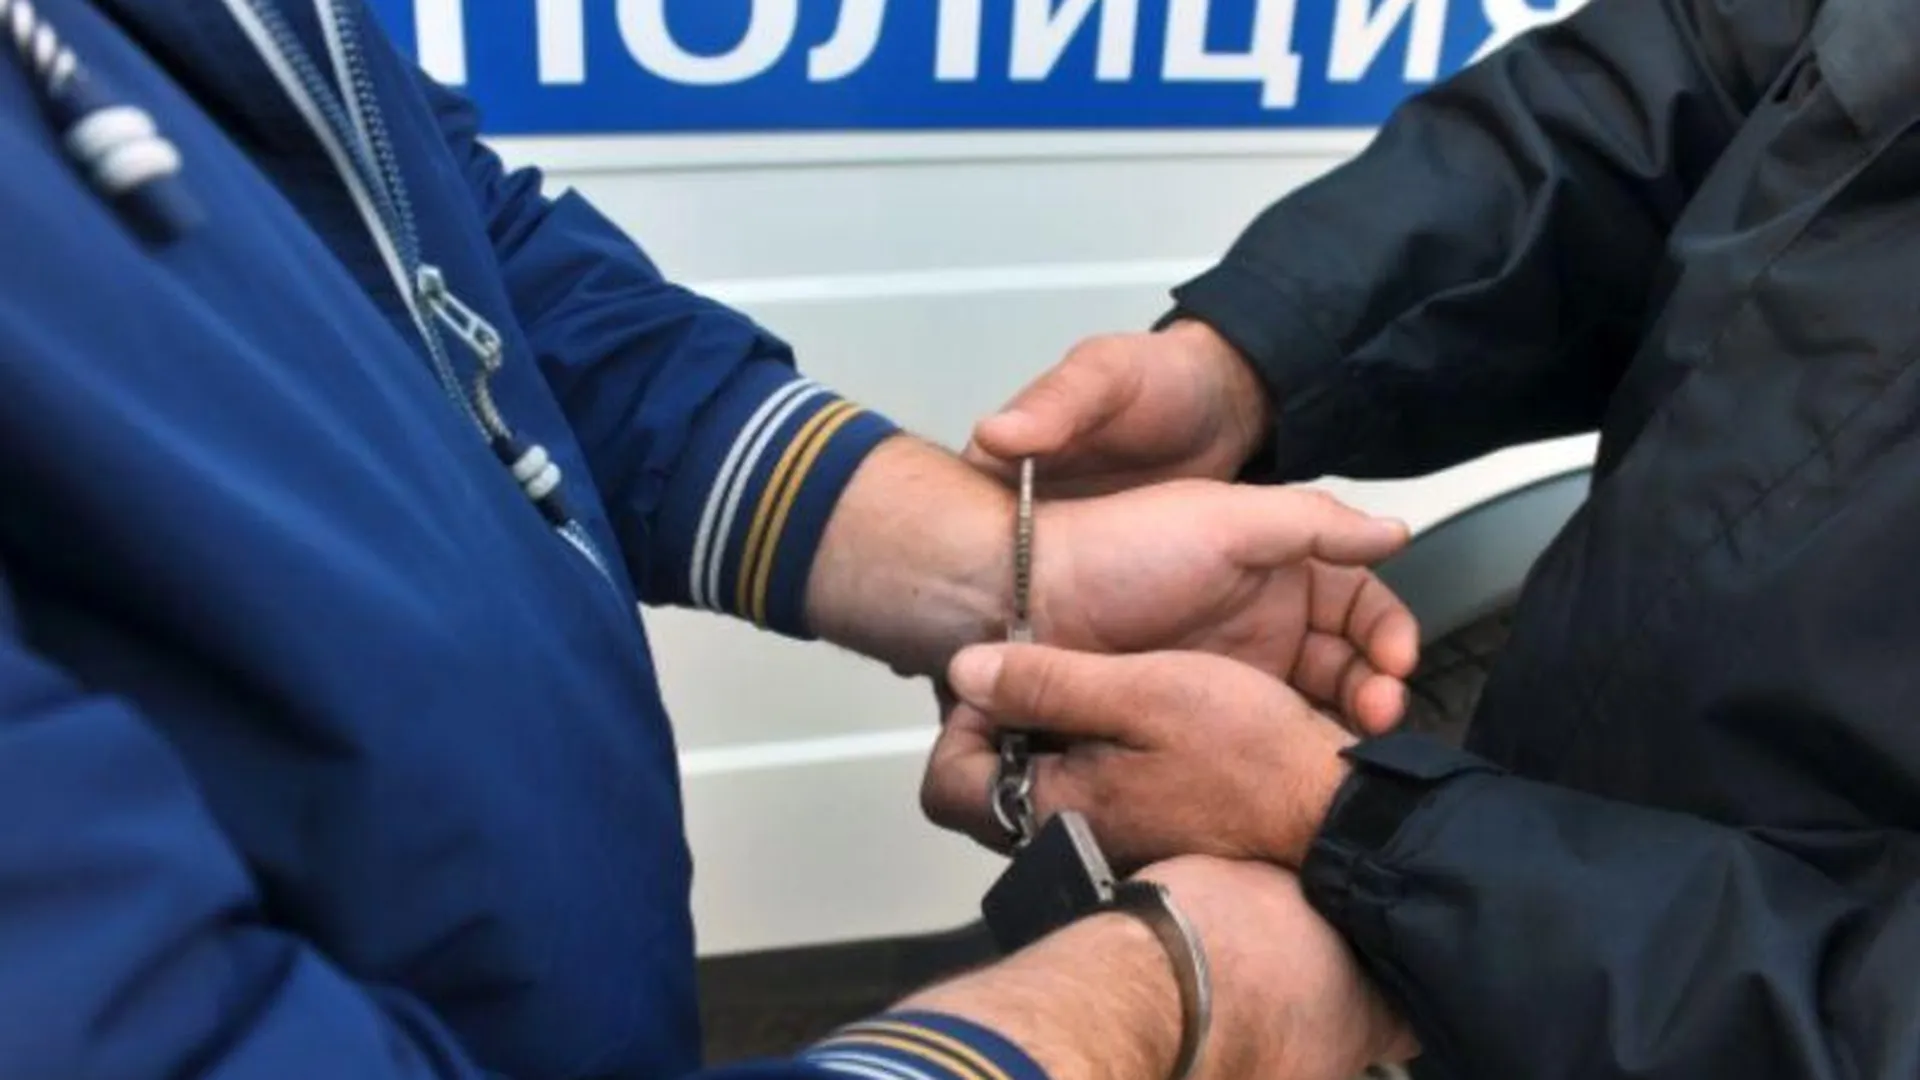 Почти тридцать килограмм наркотиков изъяли полицейские в подпольной лаборатории в Одинцово